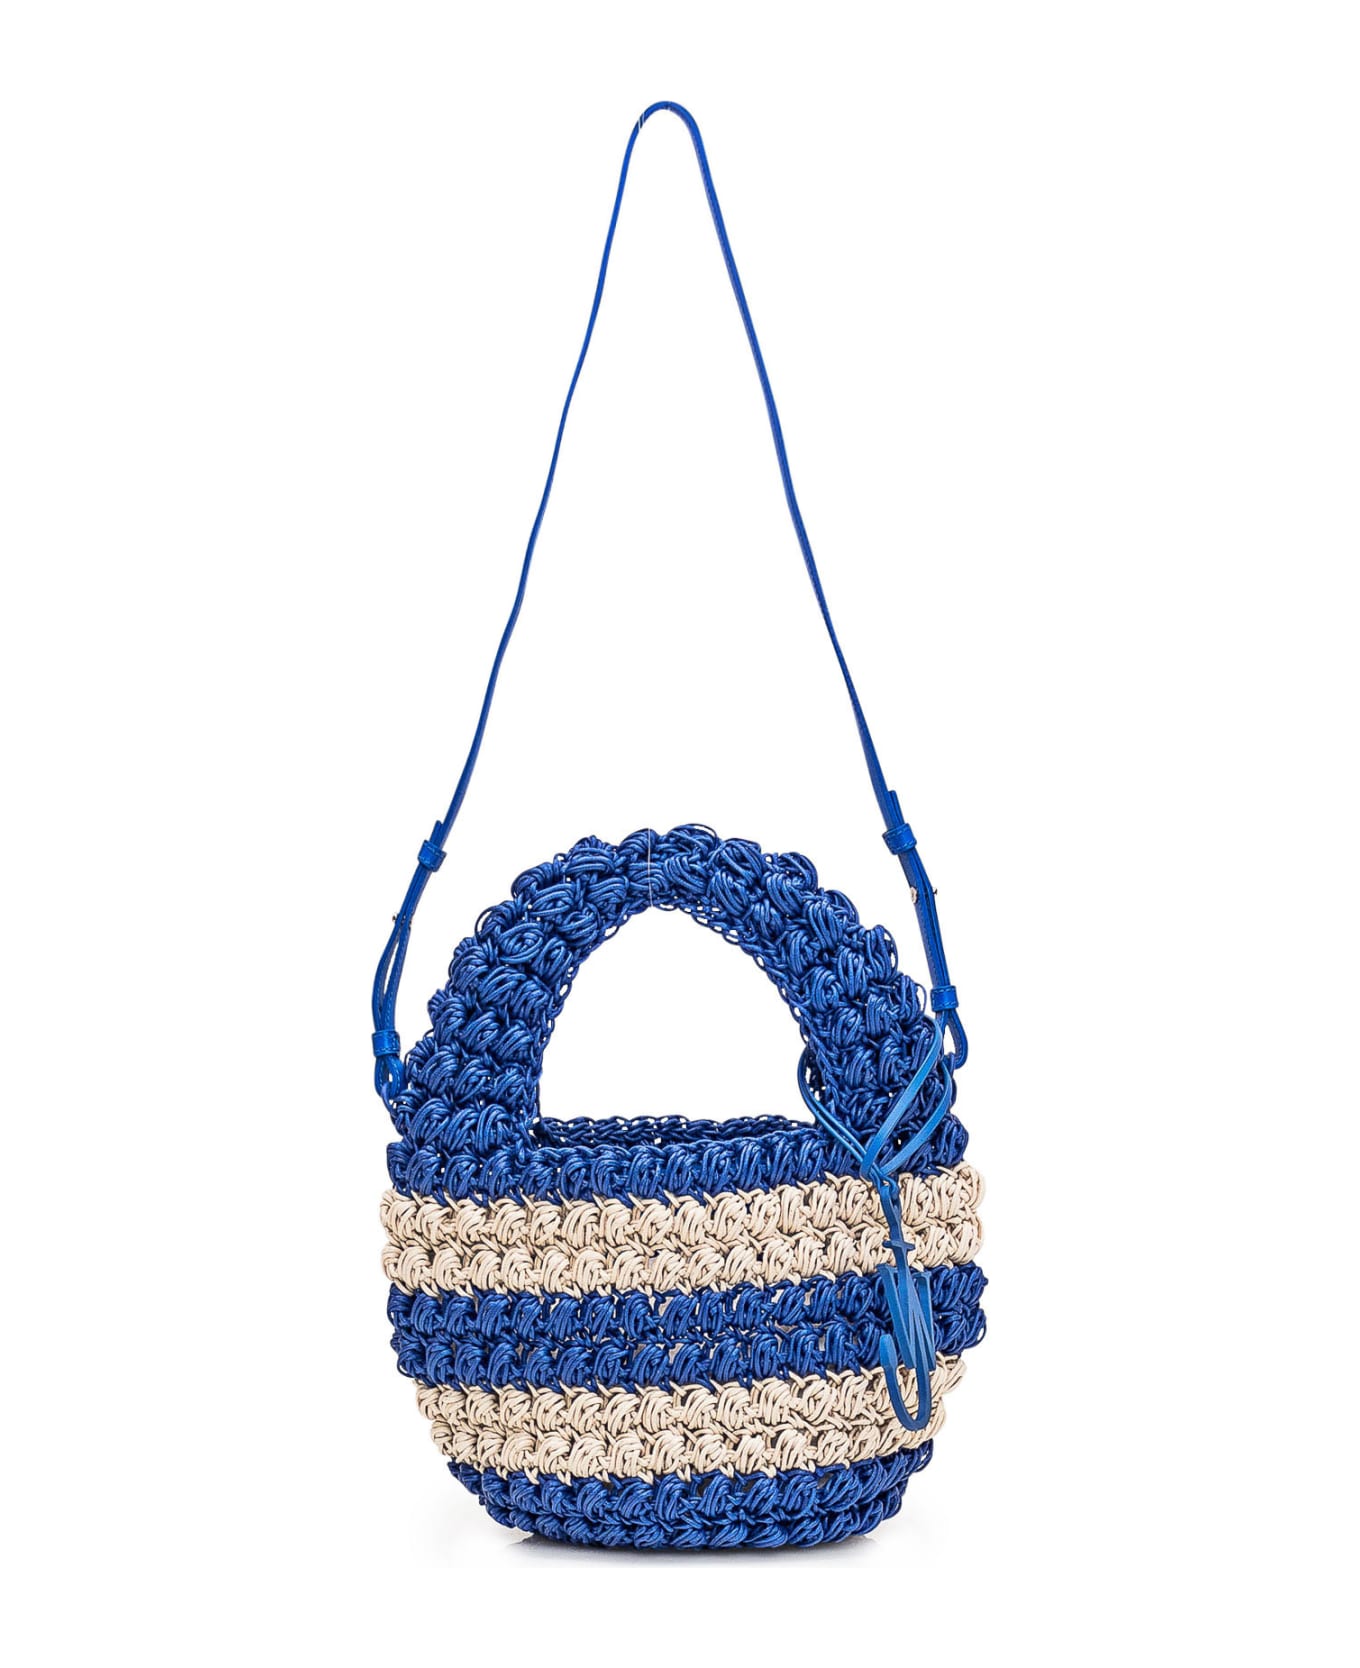 J.W. Anderson Popcorn Basket Bag - BLUE/OFF WHITE